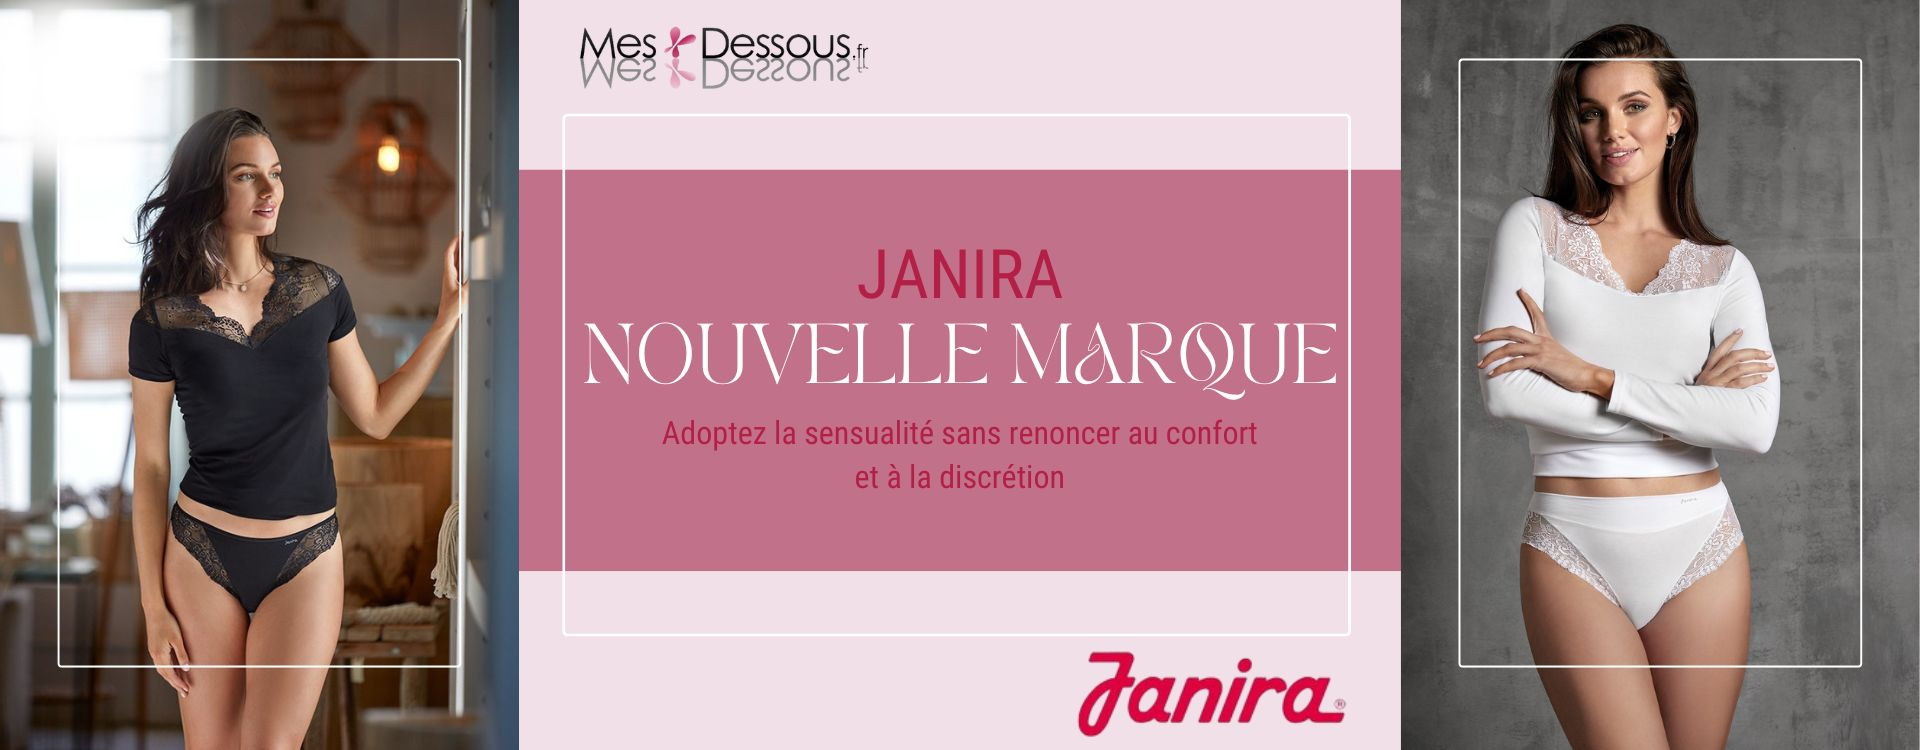 Découvrez la nouvelle marque disponible : Janira